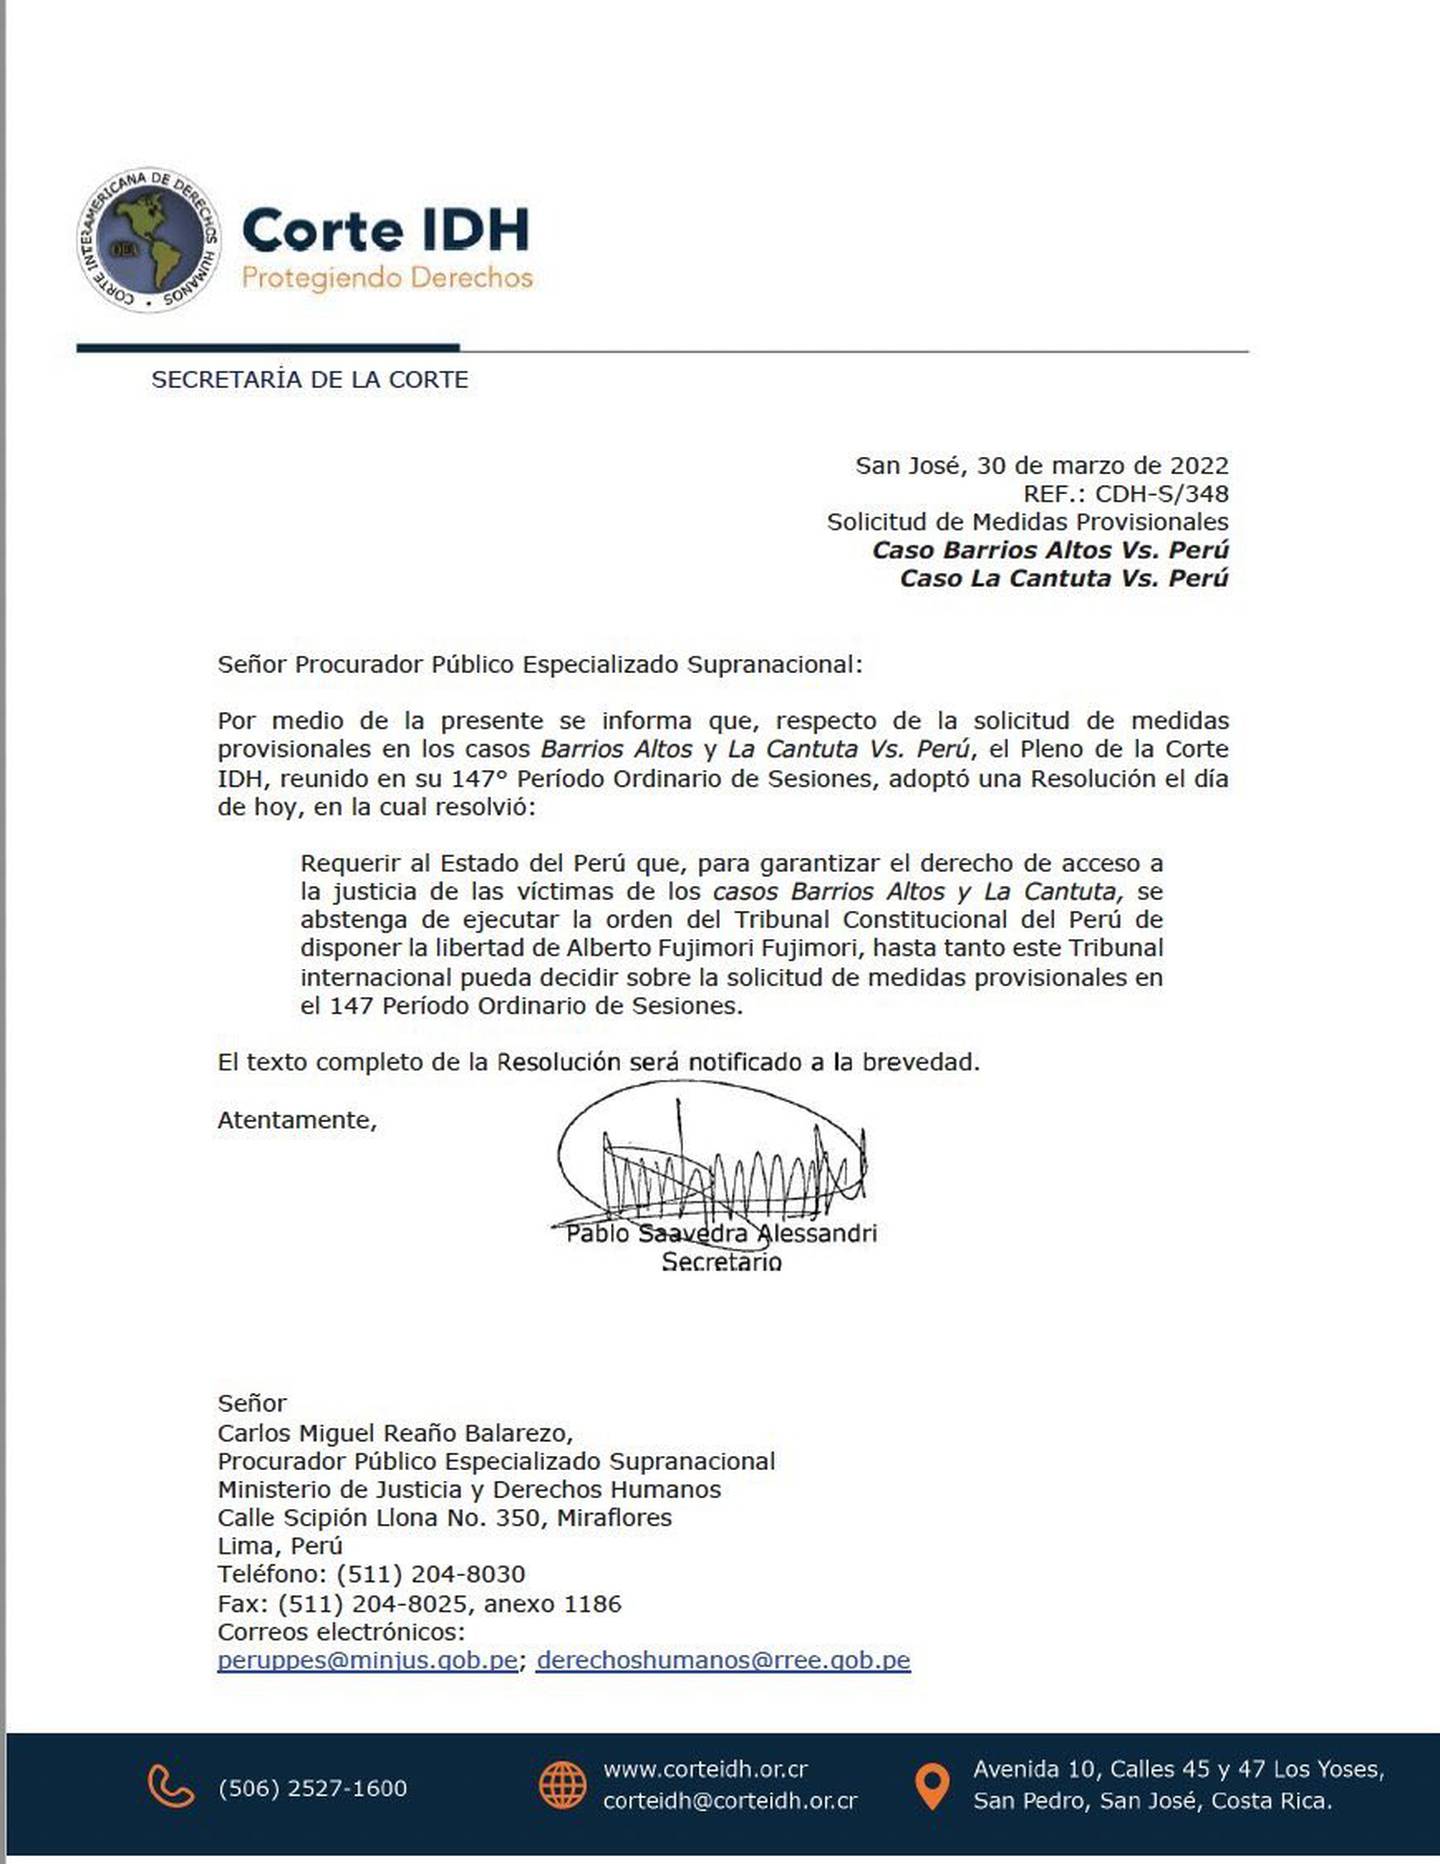 Carta de la Corte IDH sobre el caso de Alberto Fujimori.dfd